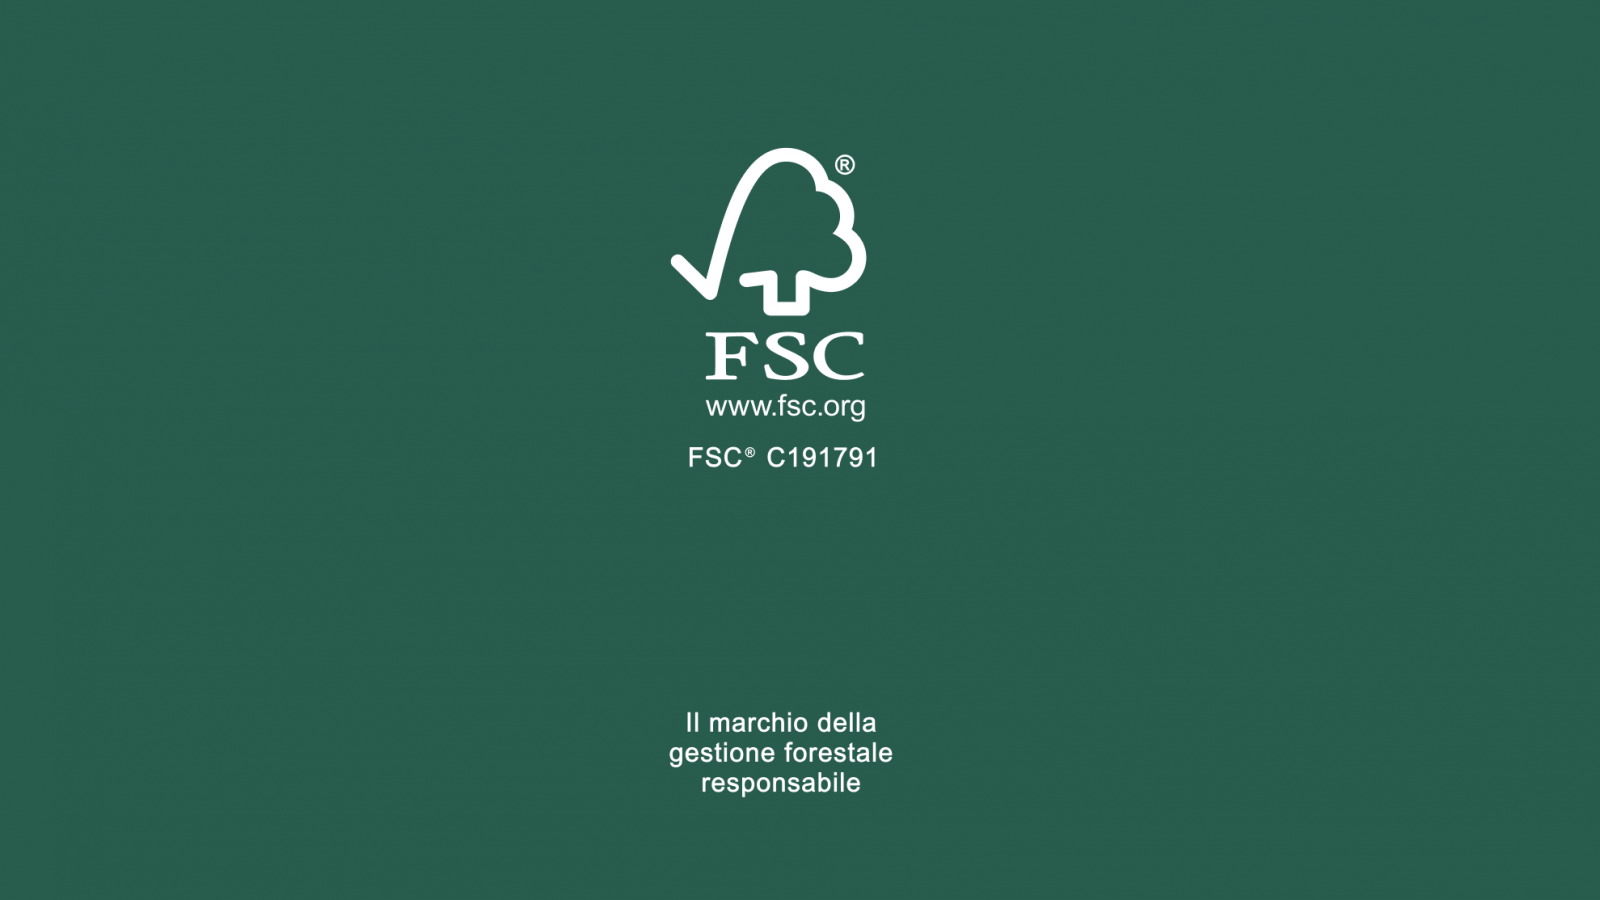 Un futuro cada día más verde con la certificación FSC®